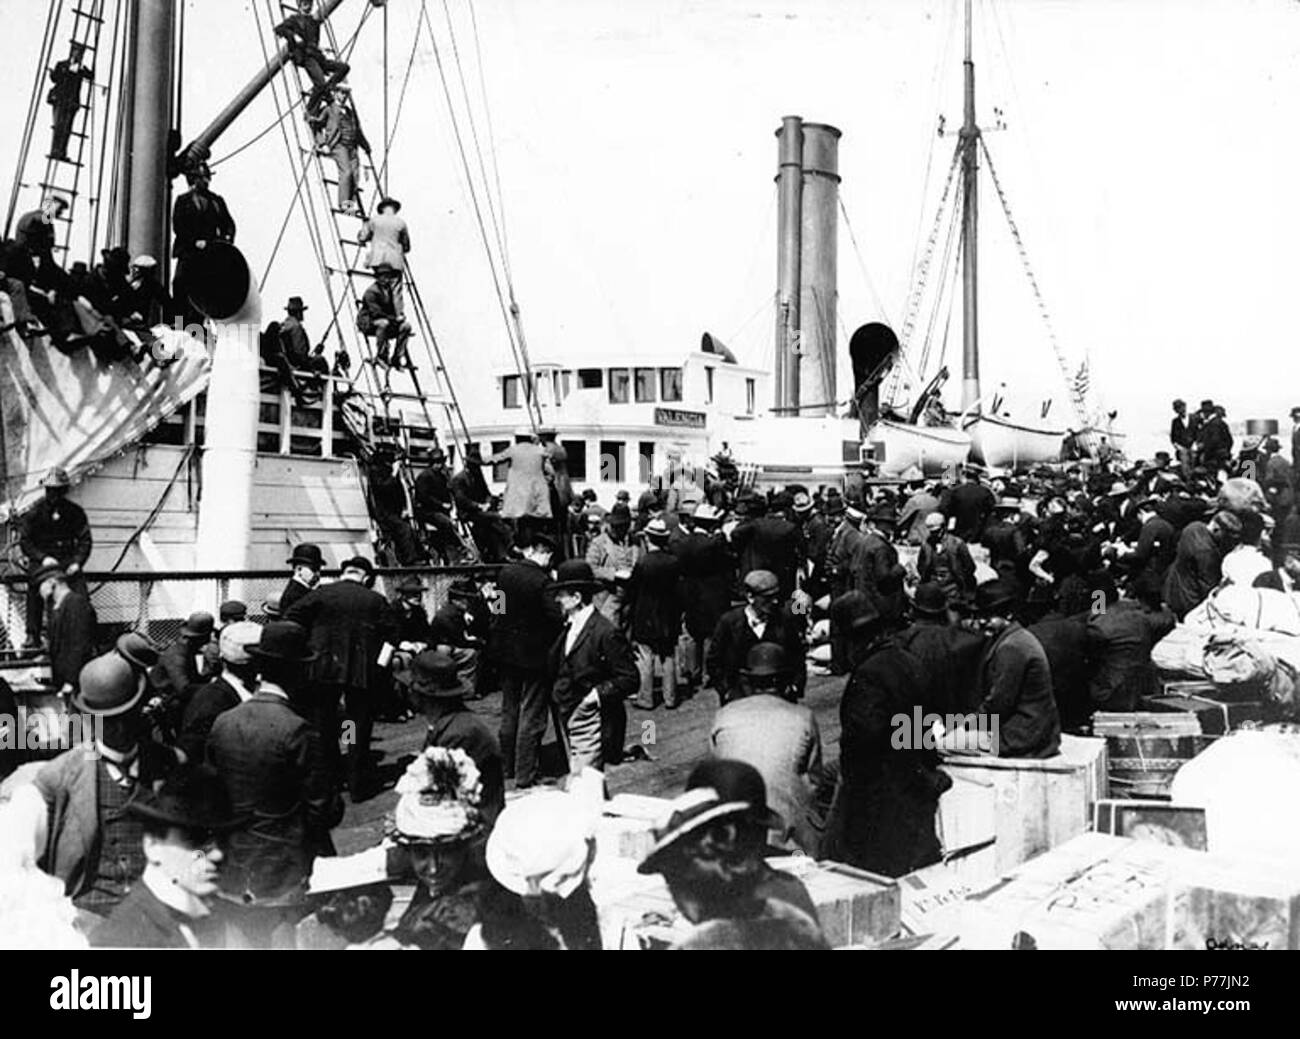 . Anglais : Steamboat VALENCIA à quai, peut-être à Nome, Alaska, ca. 1900. Anglais : Montre les hommes et les femmes avec des tas de des marchandises et bagages sur dock. Image d'origine dans Hegg Album 17, page 28. Sujets (LCTGM) : Bateaux à vapeur--Alaska--Nome ; voyage--Alaska--Nome Sujets (LCSH) : Valence (vapeur) . vers 1900 12 VALENCE Steamboat à quai, peut-être à Nome, en Alaska, vers 1900 (HEGG 564) Banque D'Images